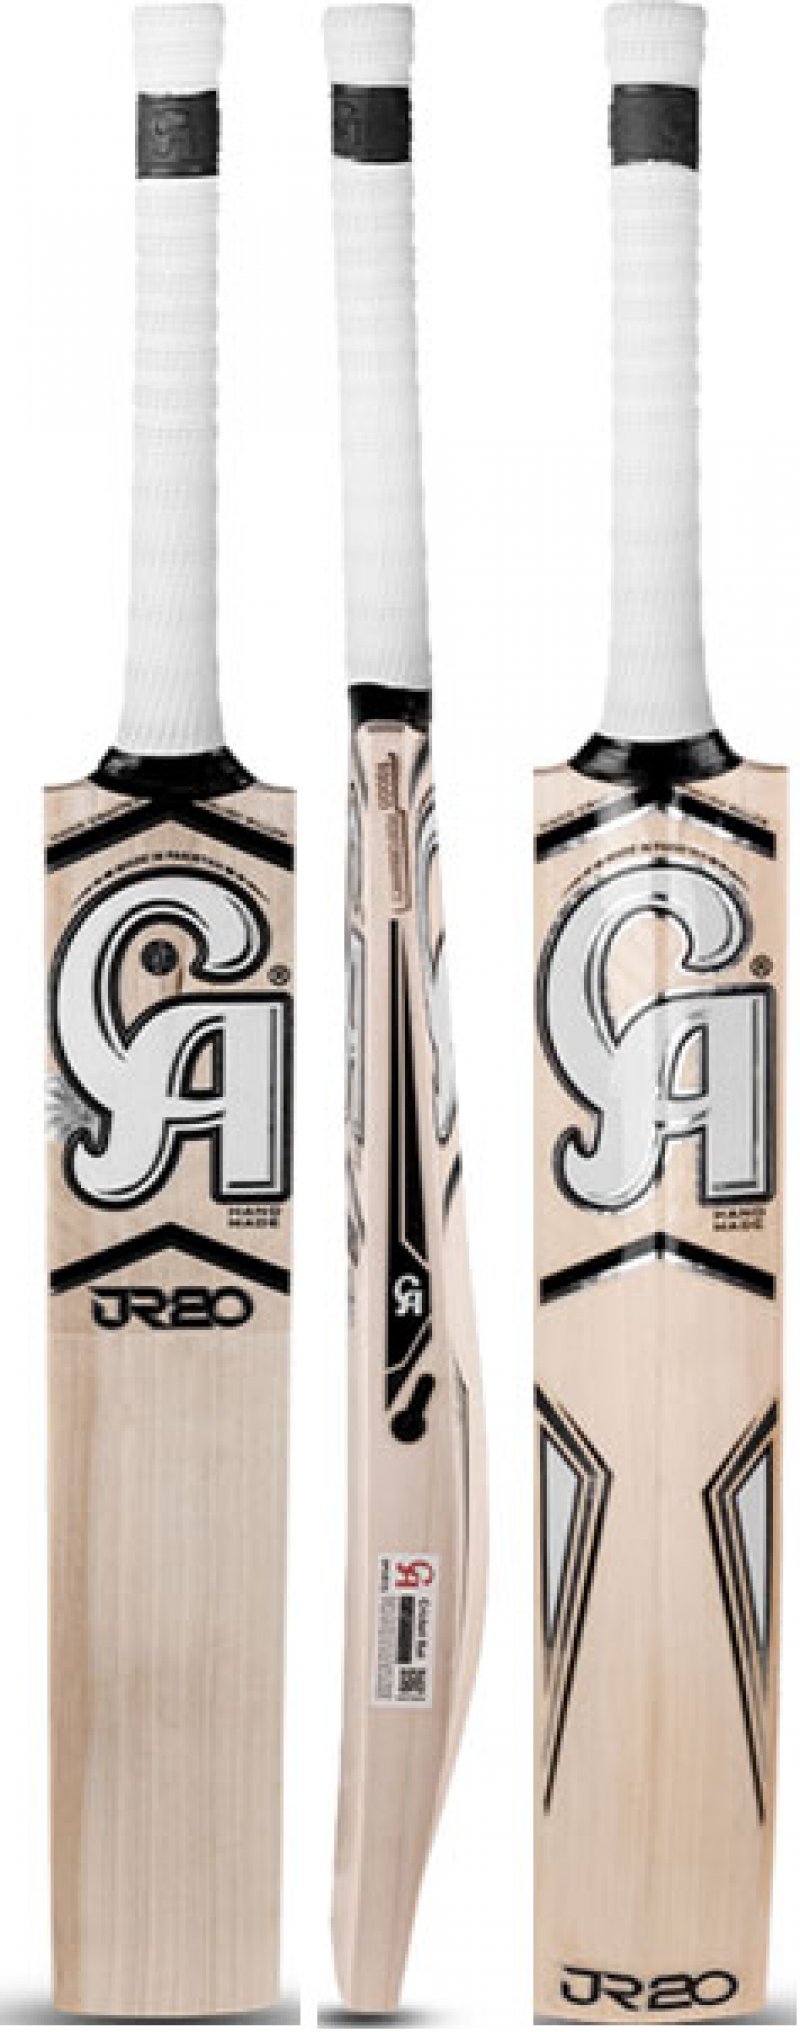 CA JR20 Performance 10000 Cricket Bat